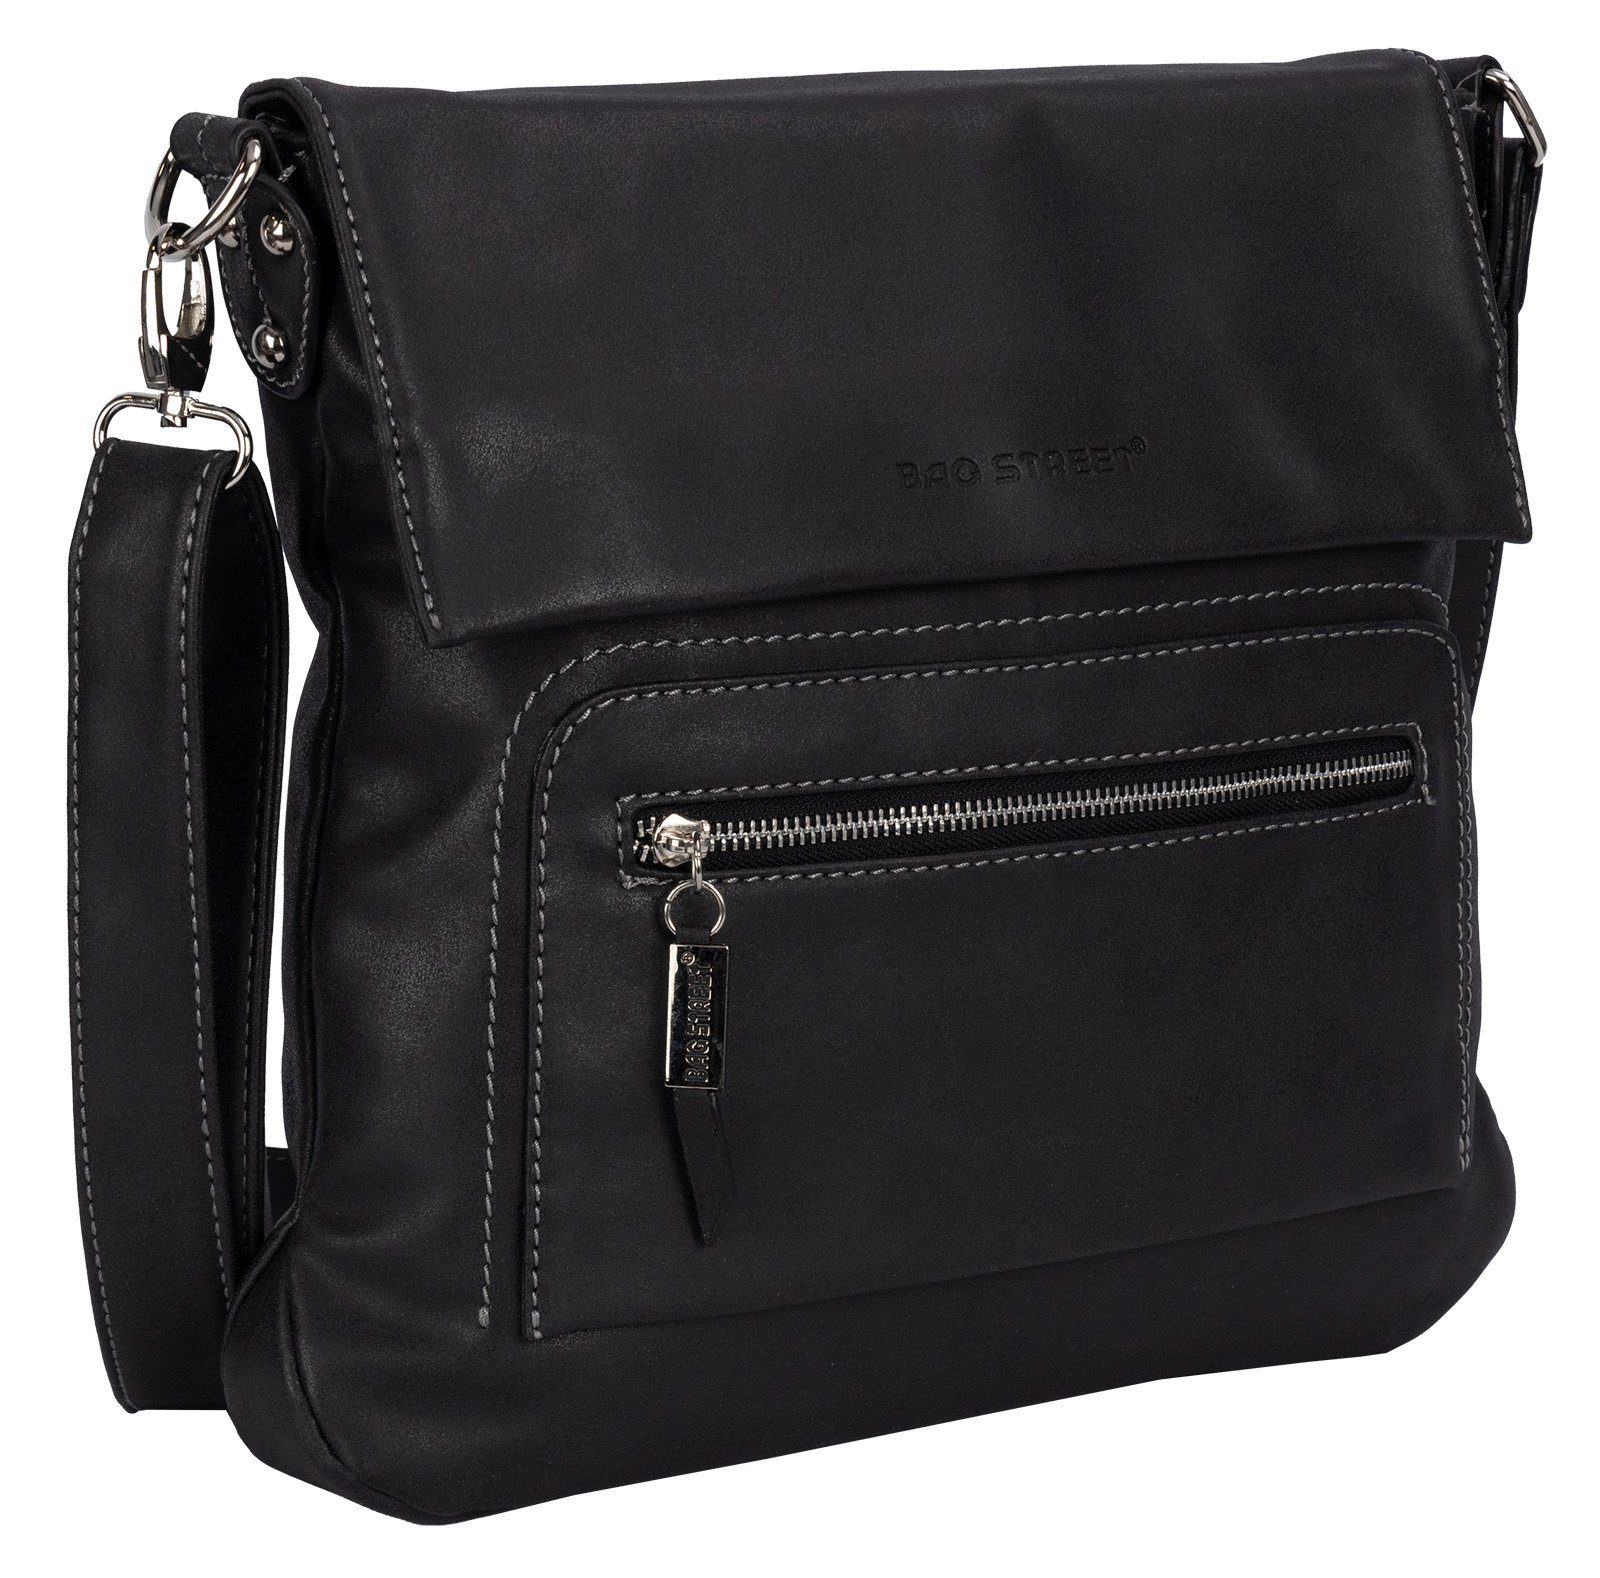 tragbar BAG STREET Schultertasche Handtasche als Bag Street Schlüsseltasche SCHWARZ Umhängetasche Damentasche Schultertasche, T0103, Umhängetasche